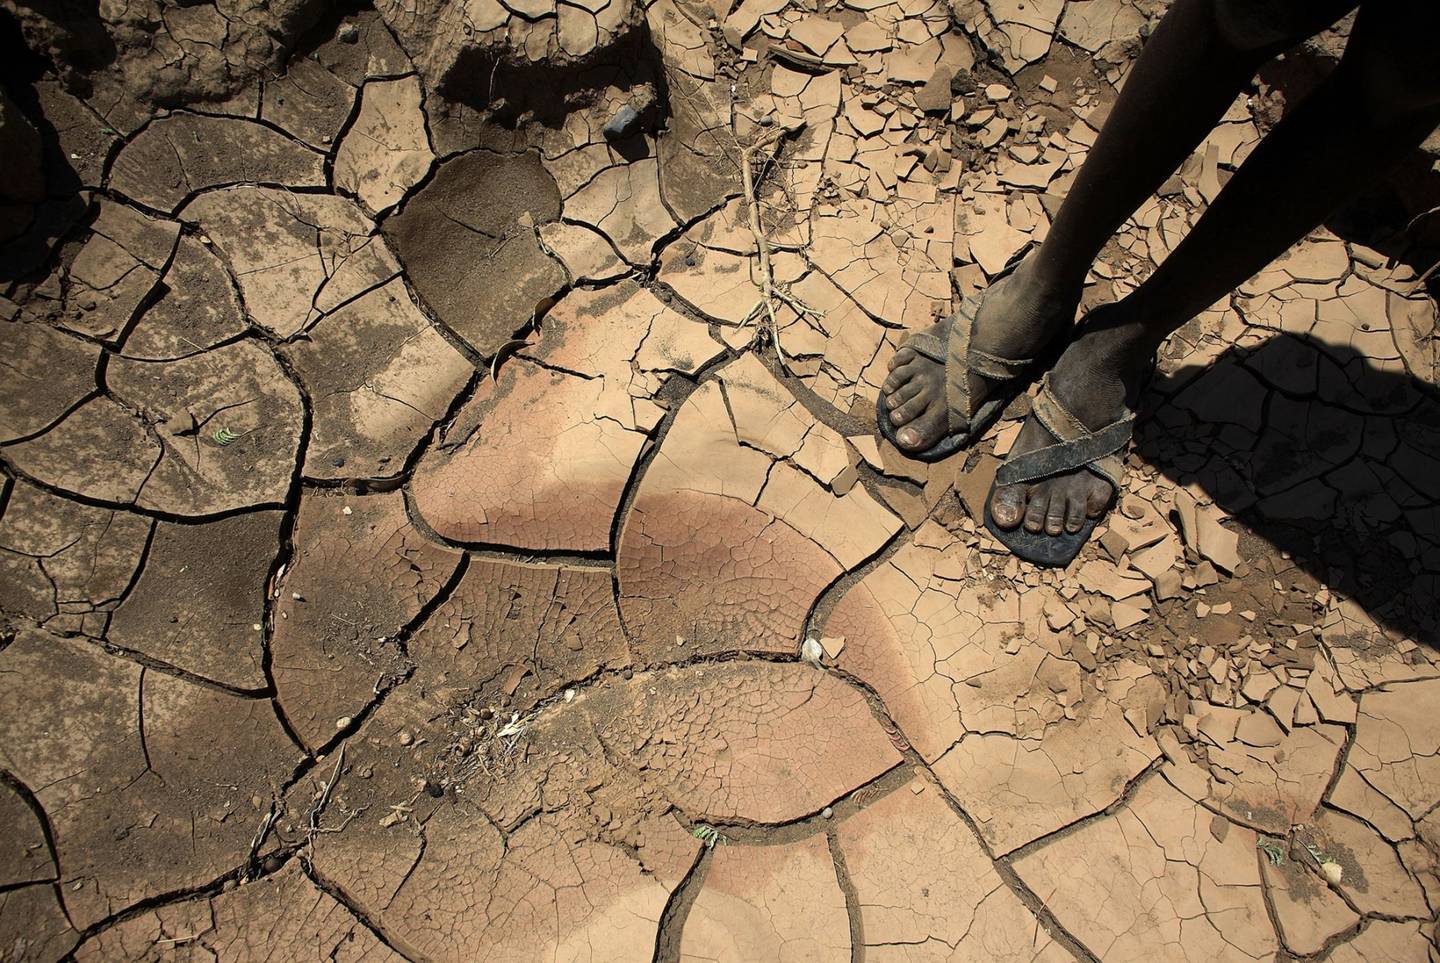 Un niño de la remota tribu turkana del norte de Kenia se encuentra en el lecho de un río seco el 9 de noviembre de 2009 cerca de Lodwar, Kenia. Más de 23 millones de personas en toda África Oriental se enfrentan a una escasez crítica de agua y alimentos, situación que se ha agravado por el cambio climático.